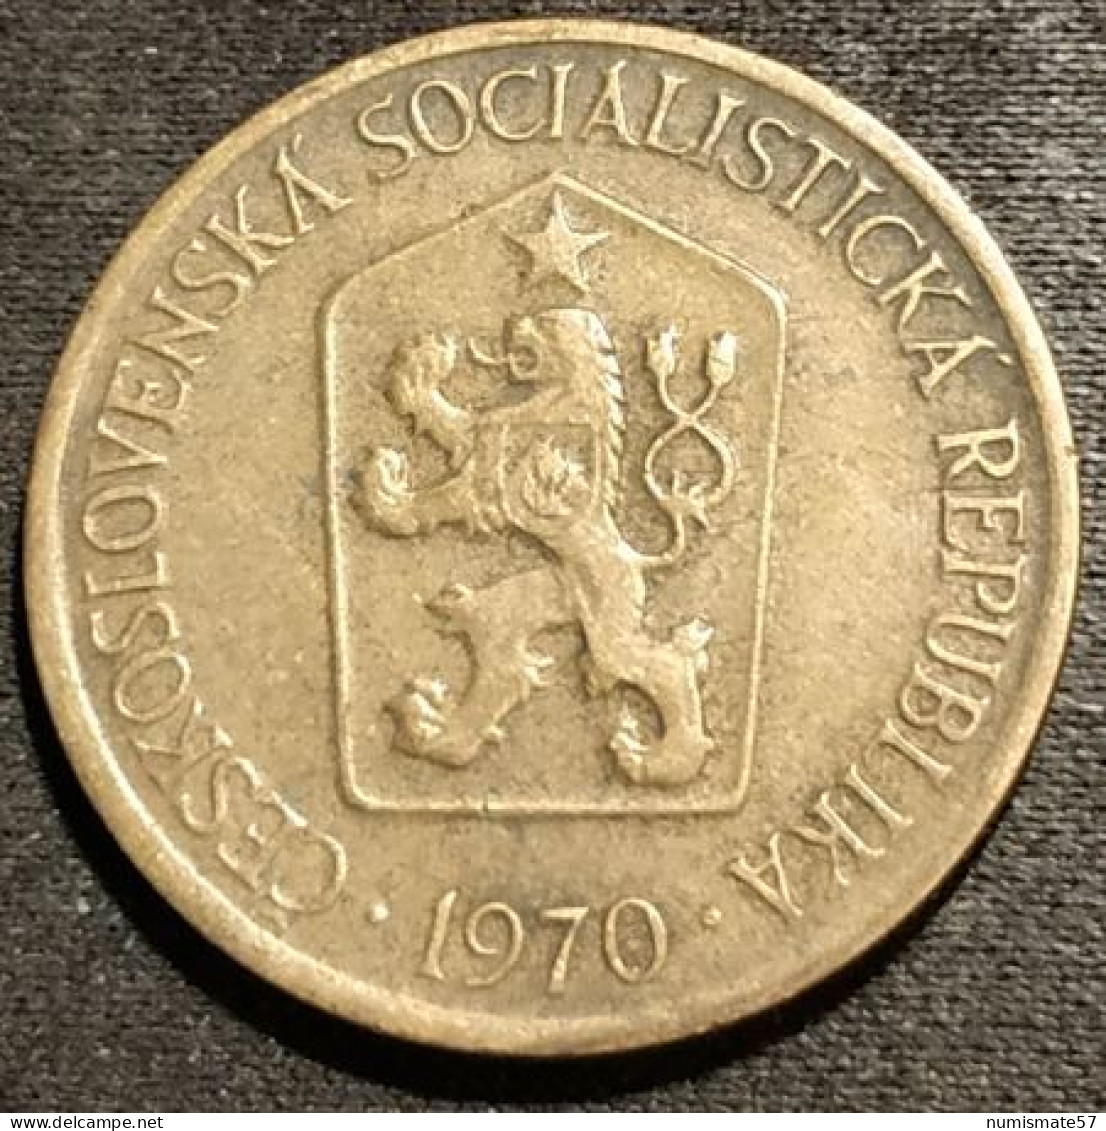 TCHECOSLOVAQUIE - Czechoslovakia - 1 KORUNA 1970 - KM 50 - Czechoslovakia